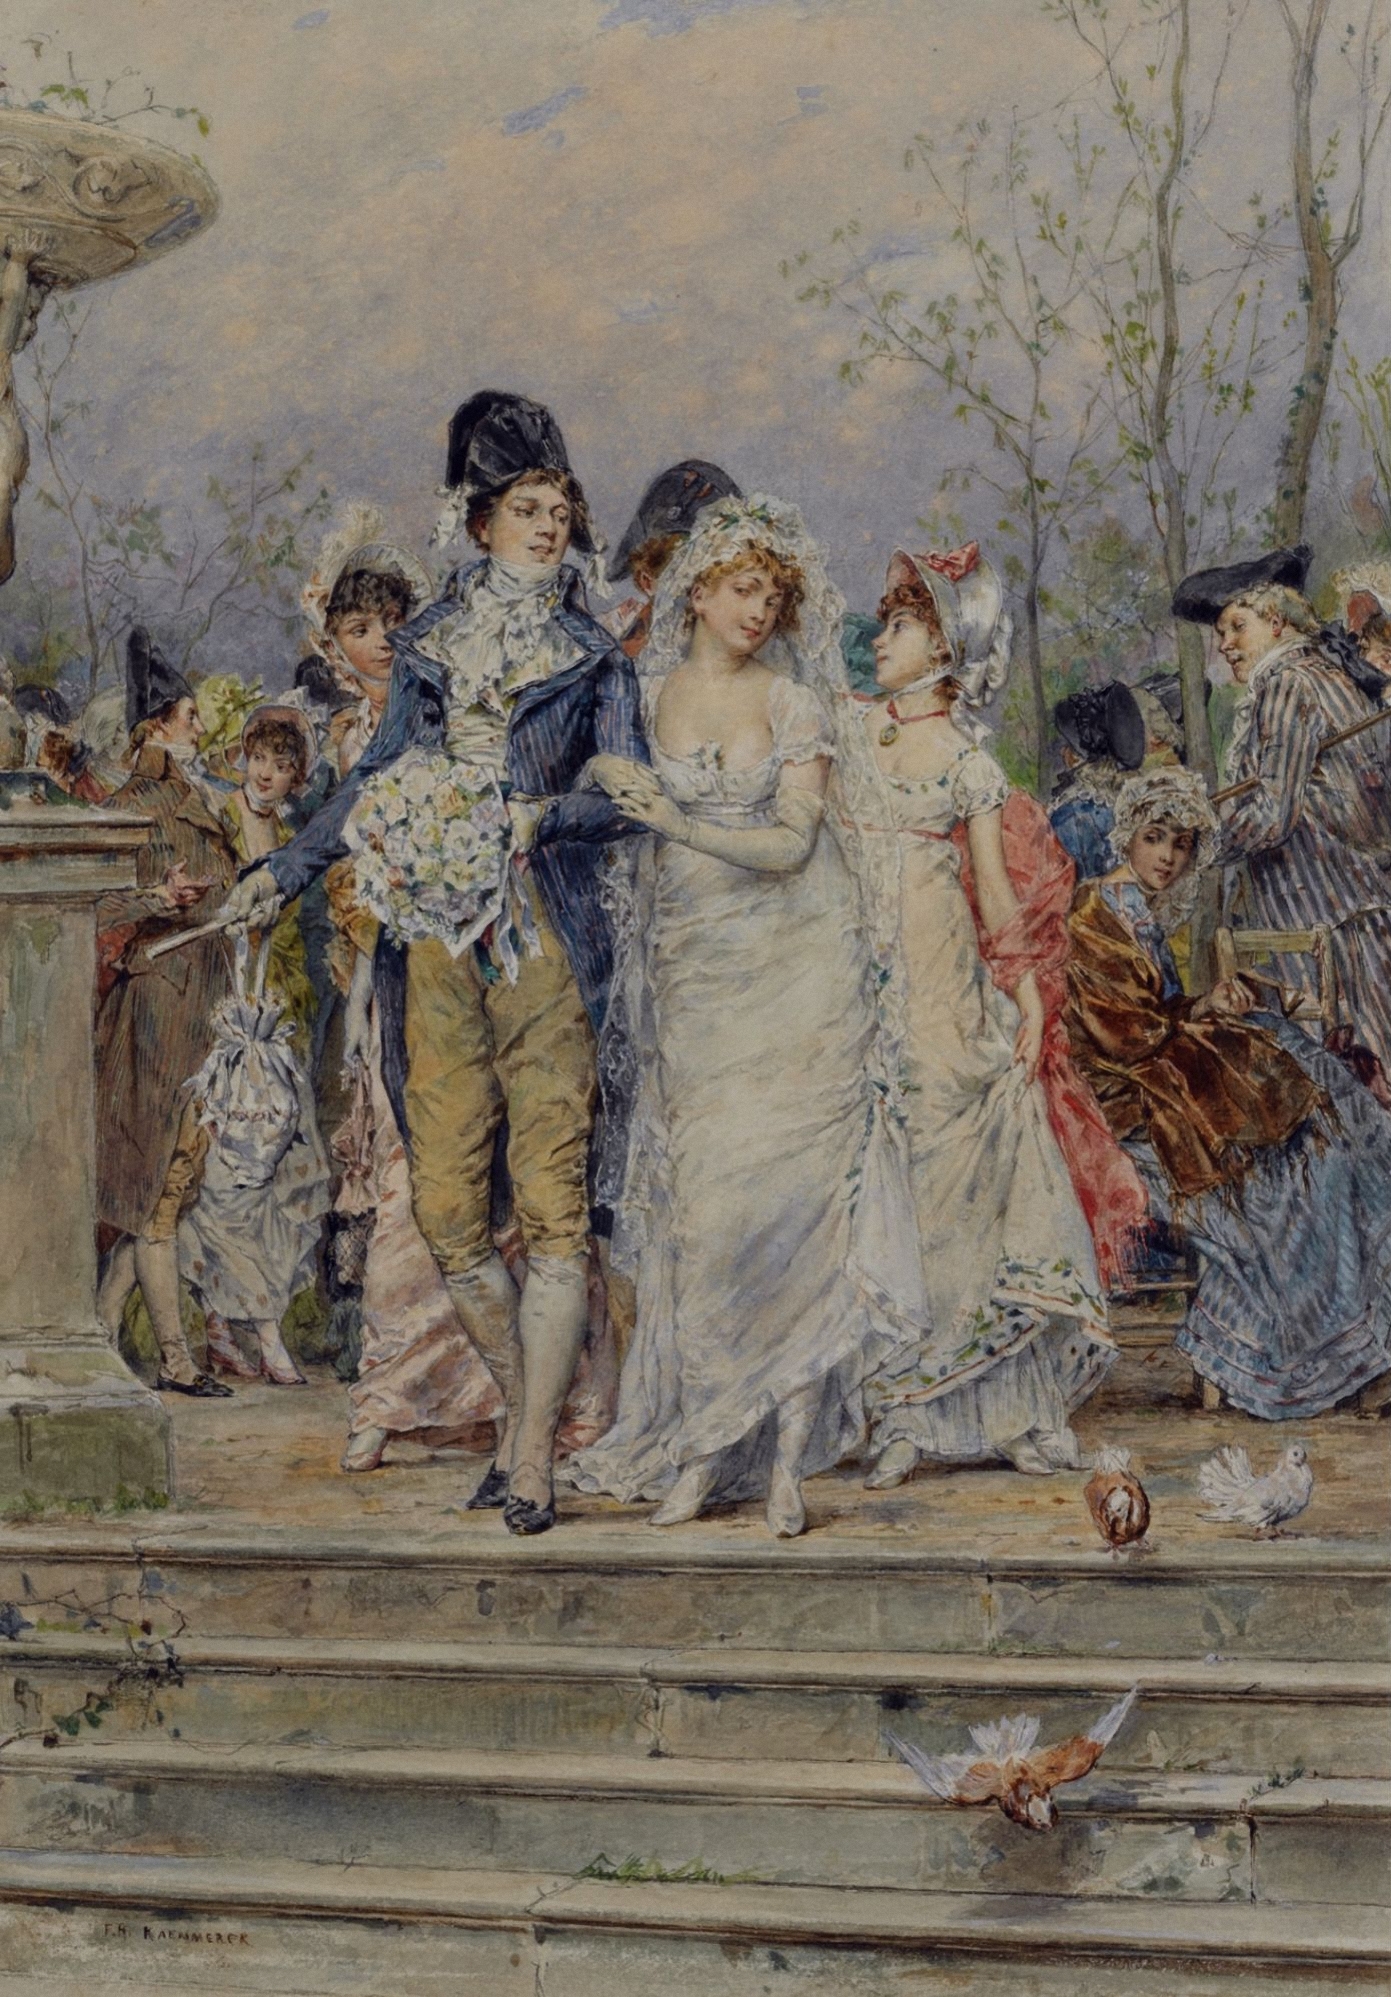 The Revolutionist's Bride, Paris, France, 1799 by Frederick Hendrik Kaemmerer